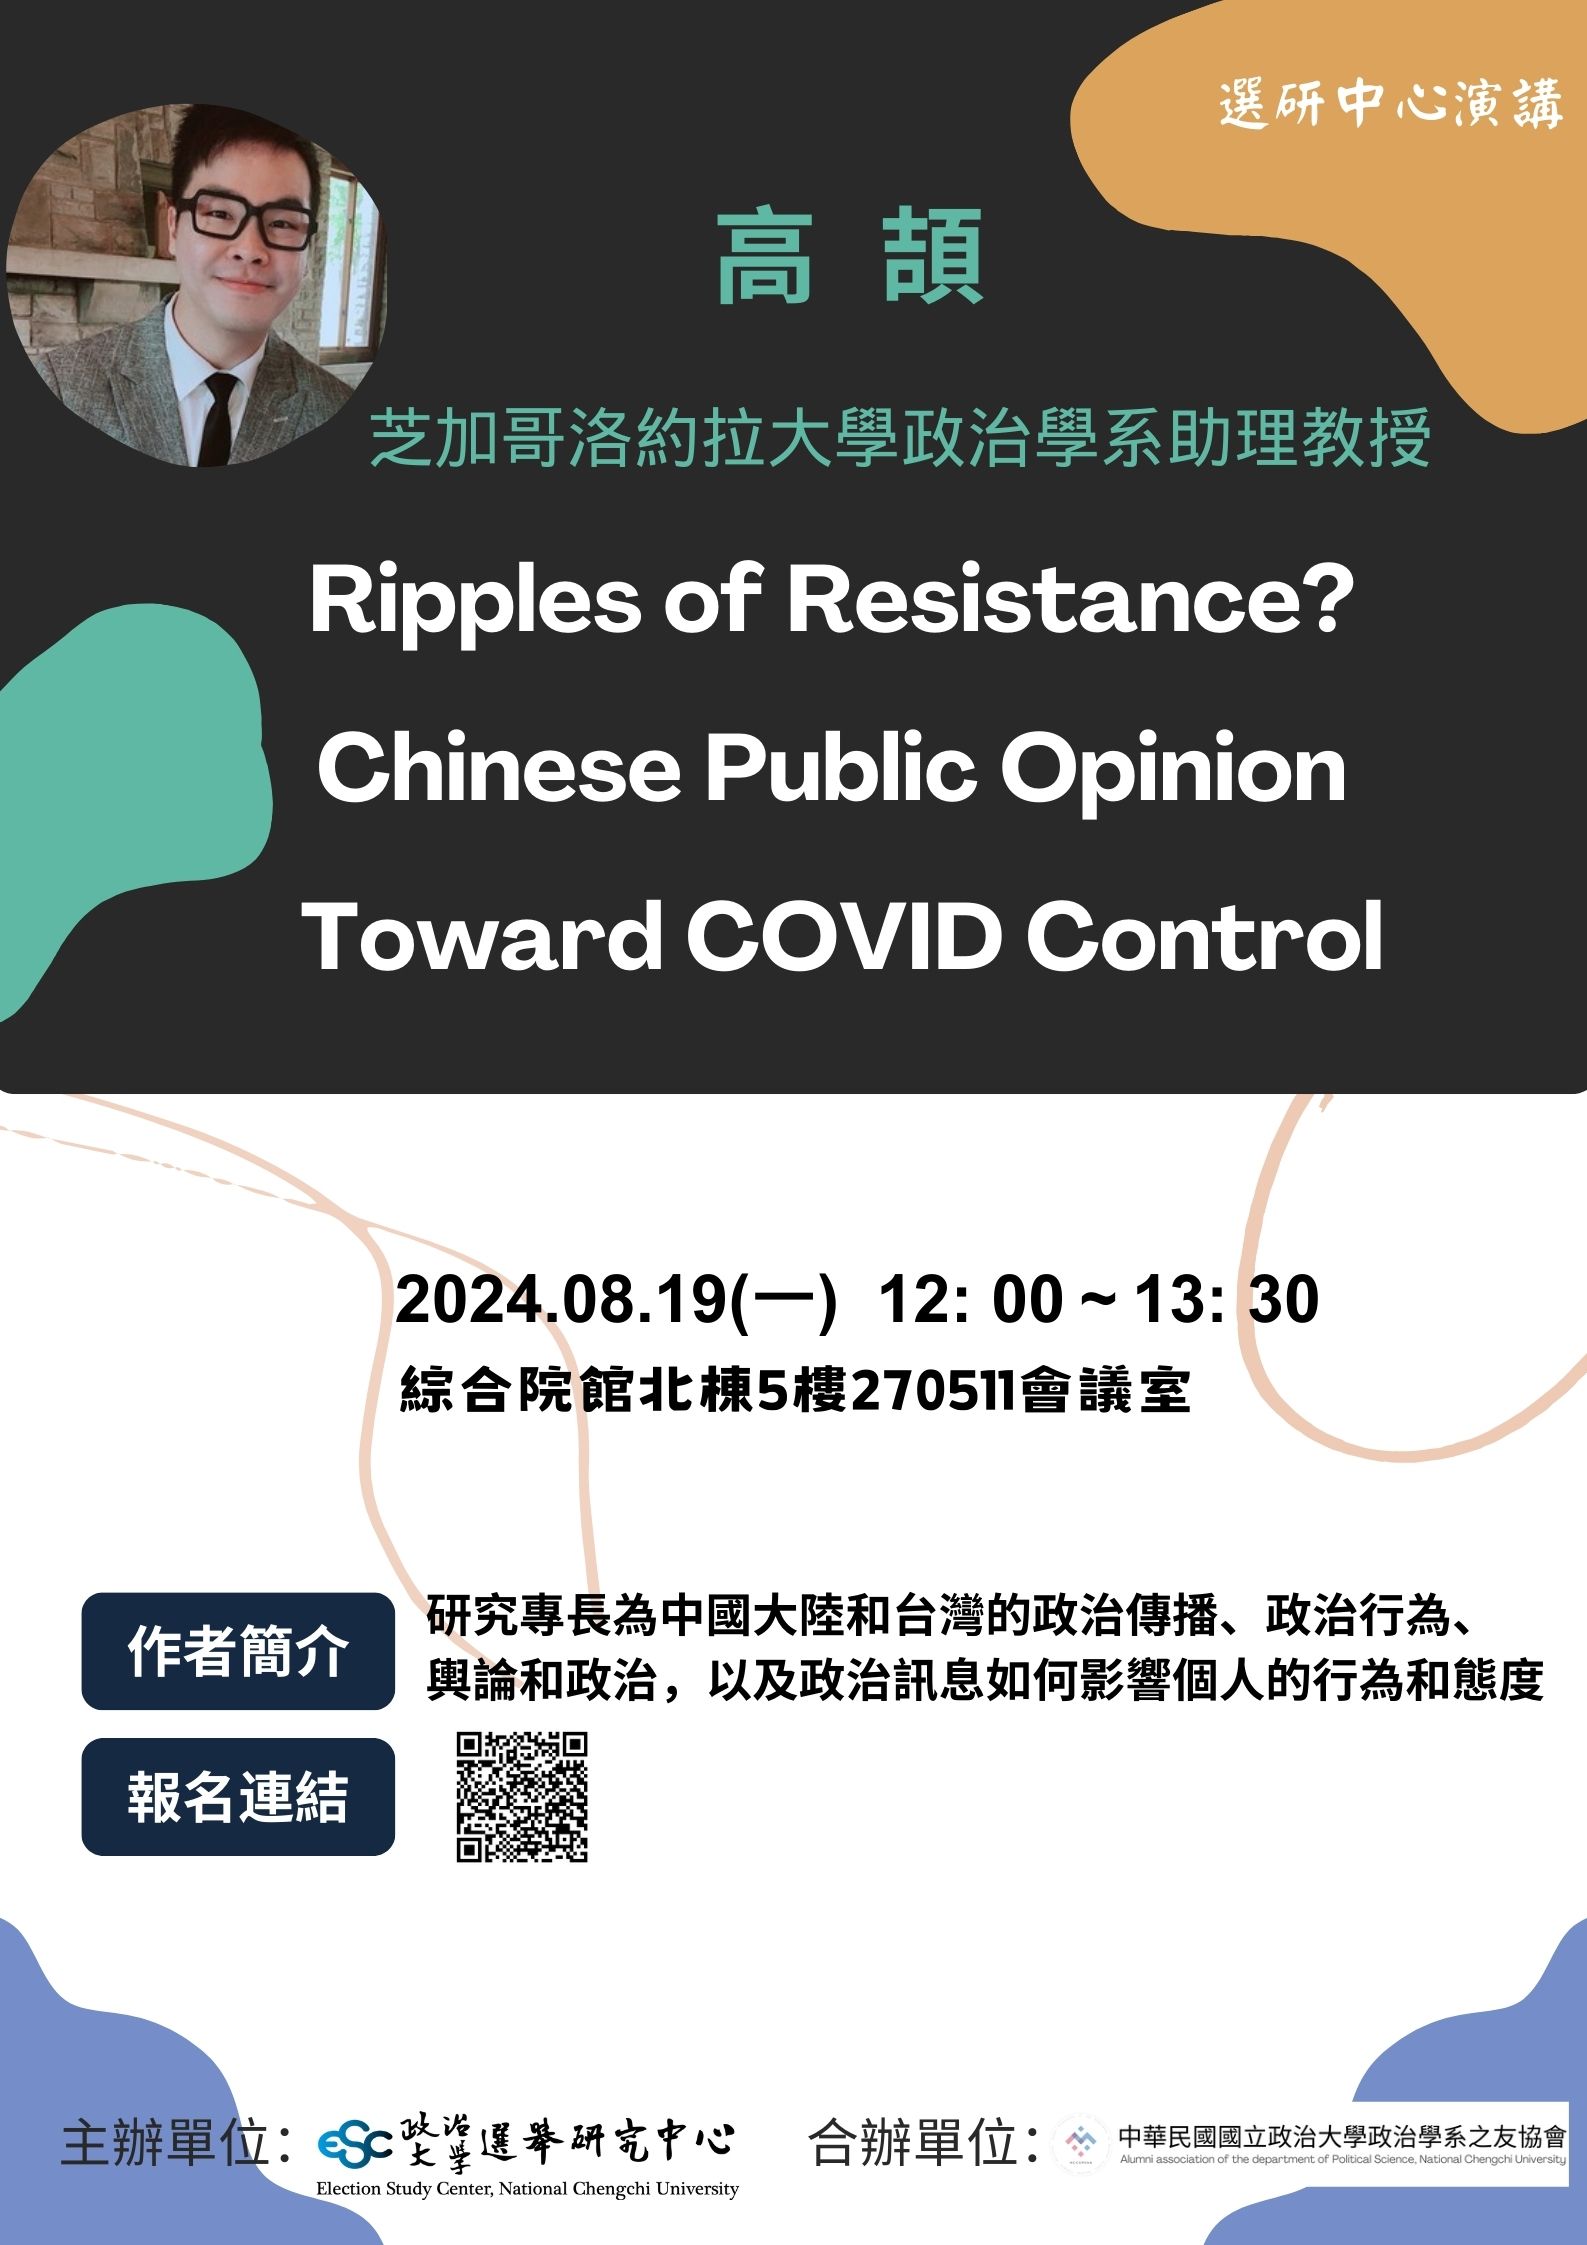 【演講訊息】Ripples of Resistance? Chinese Public Opinion Toward COVID Control